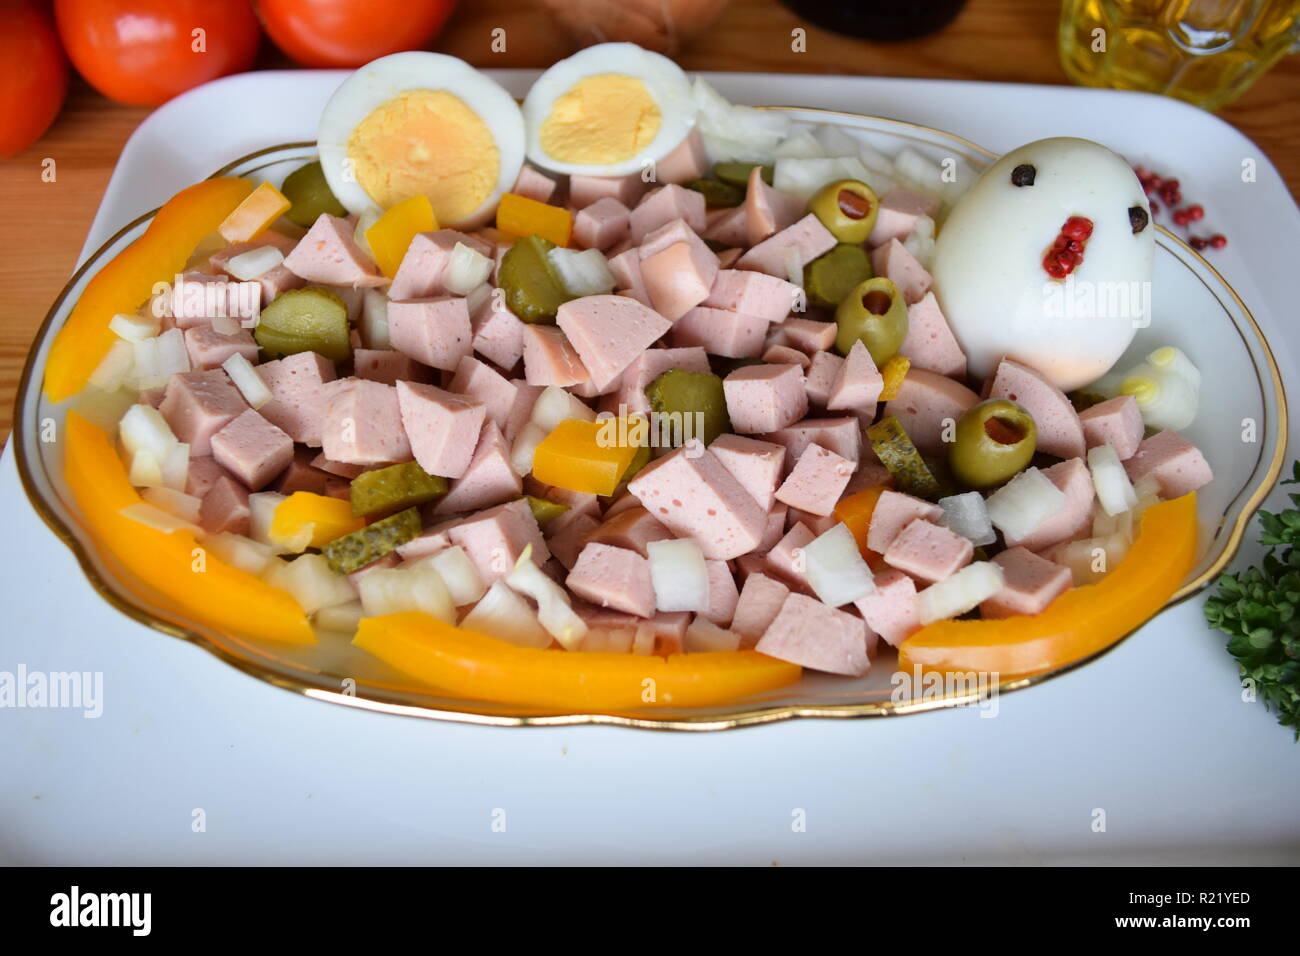 Wurst salat als frühstück mit lyoner, zwiebel, oliven und Gurken.   Sausage salad as a breakfast with lyoner, onion, olives and cucumbers. Stock Photo